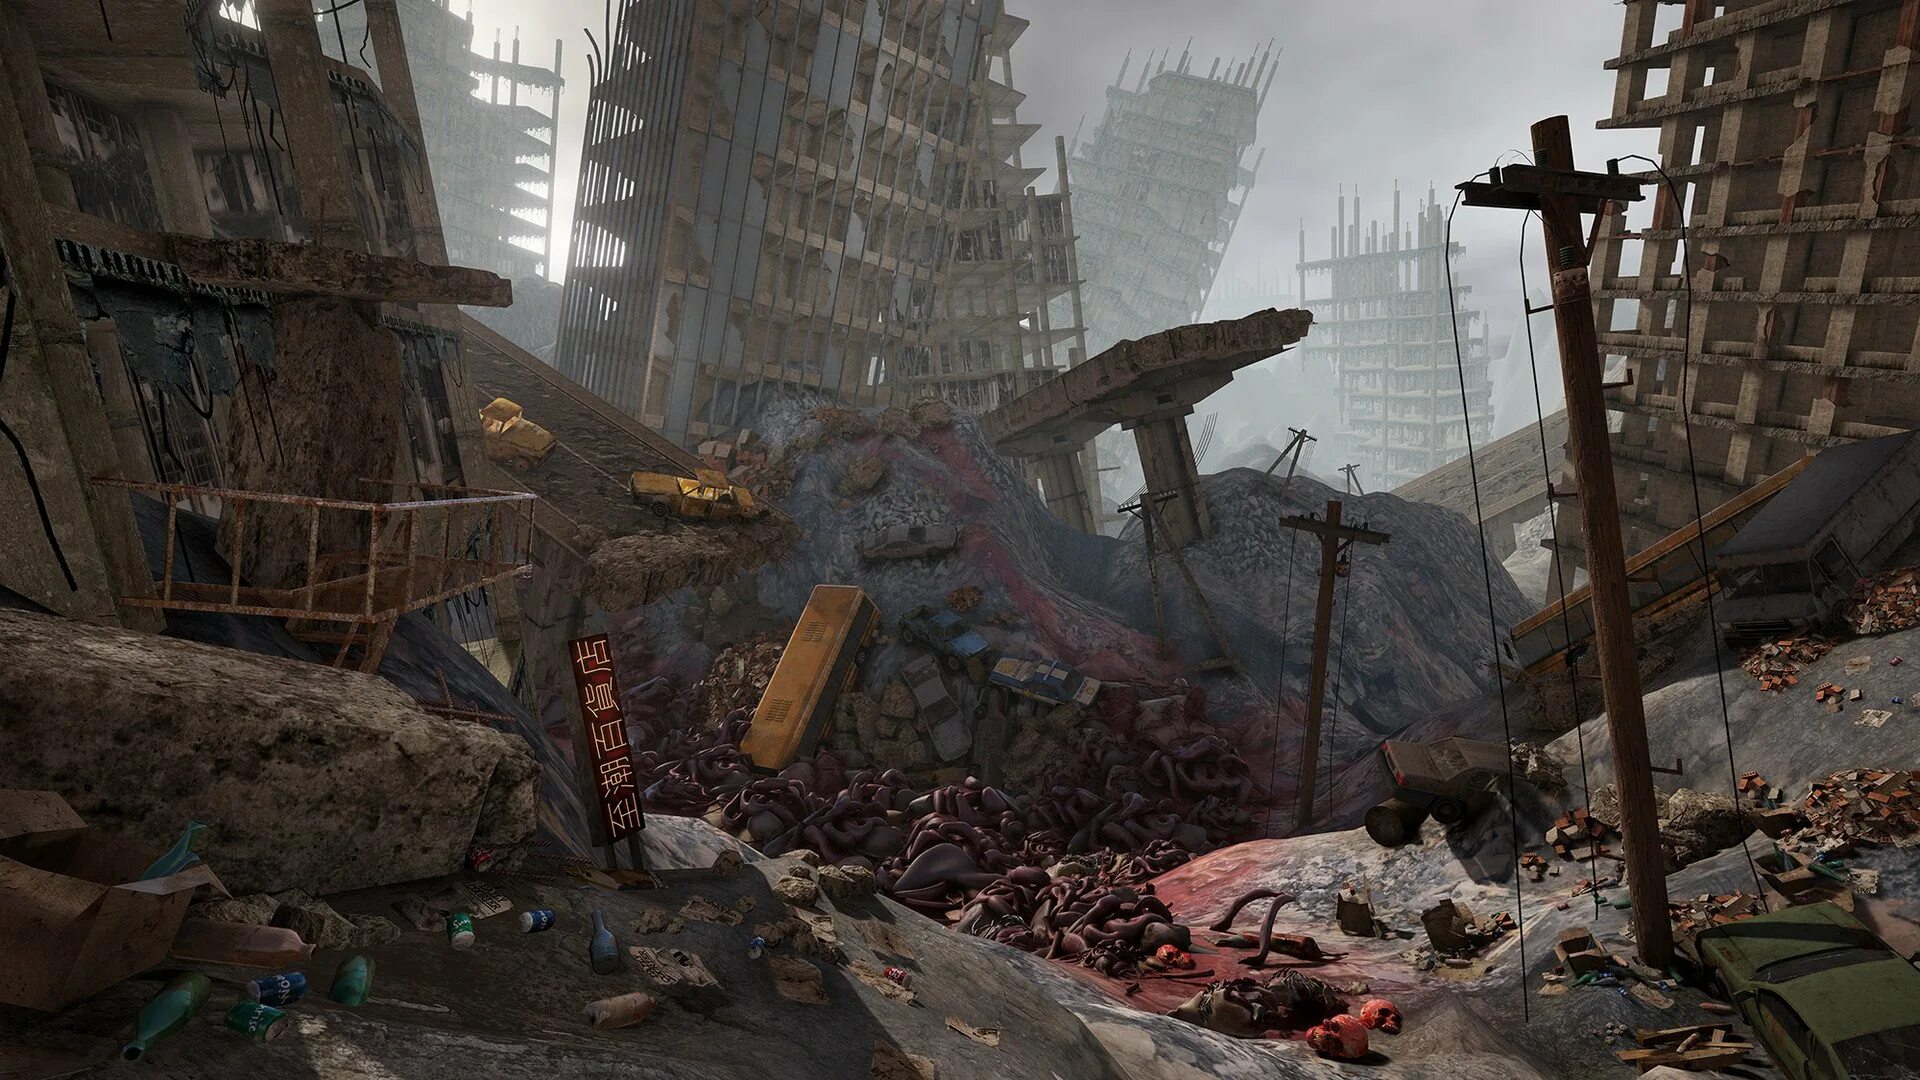 Destroyed town. Лос Анджелес апокалипсис атмосфера. Разрушенное здание. Развалины города. Руины города.